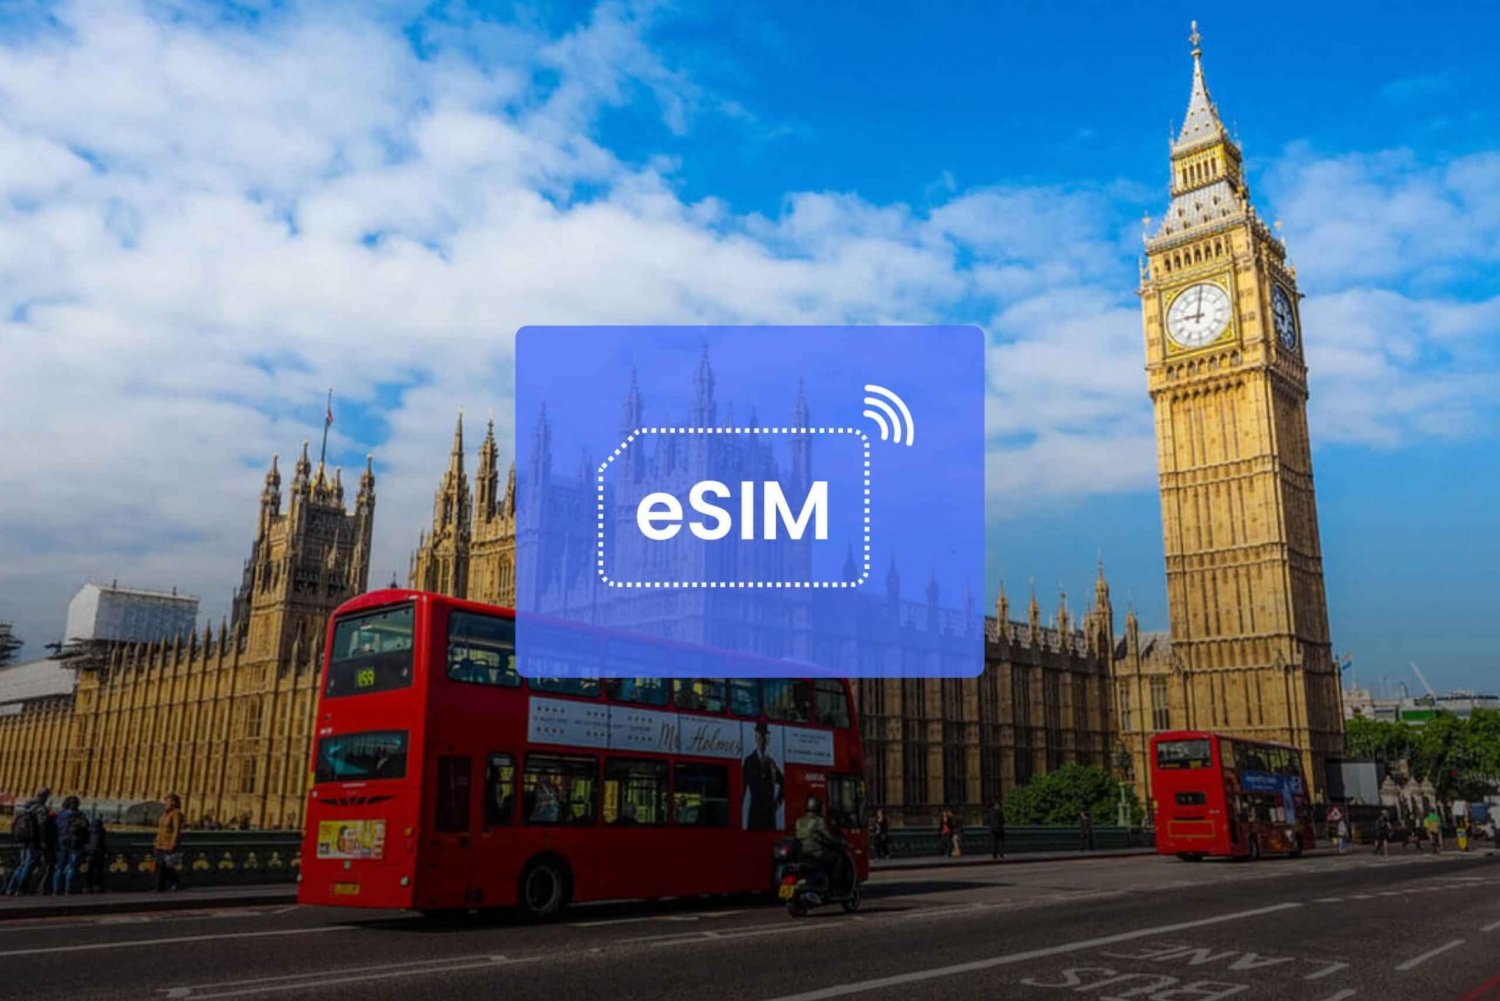 Londen: eSIM roaming mobiel data-abonnement voor VK en Europa